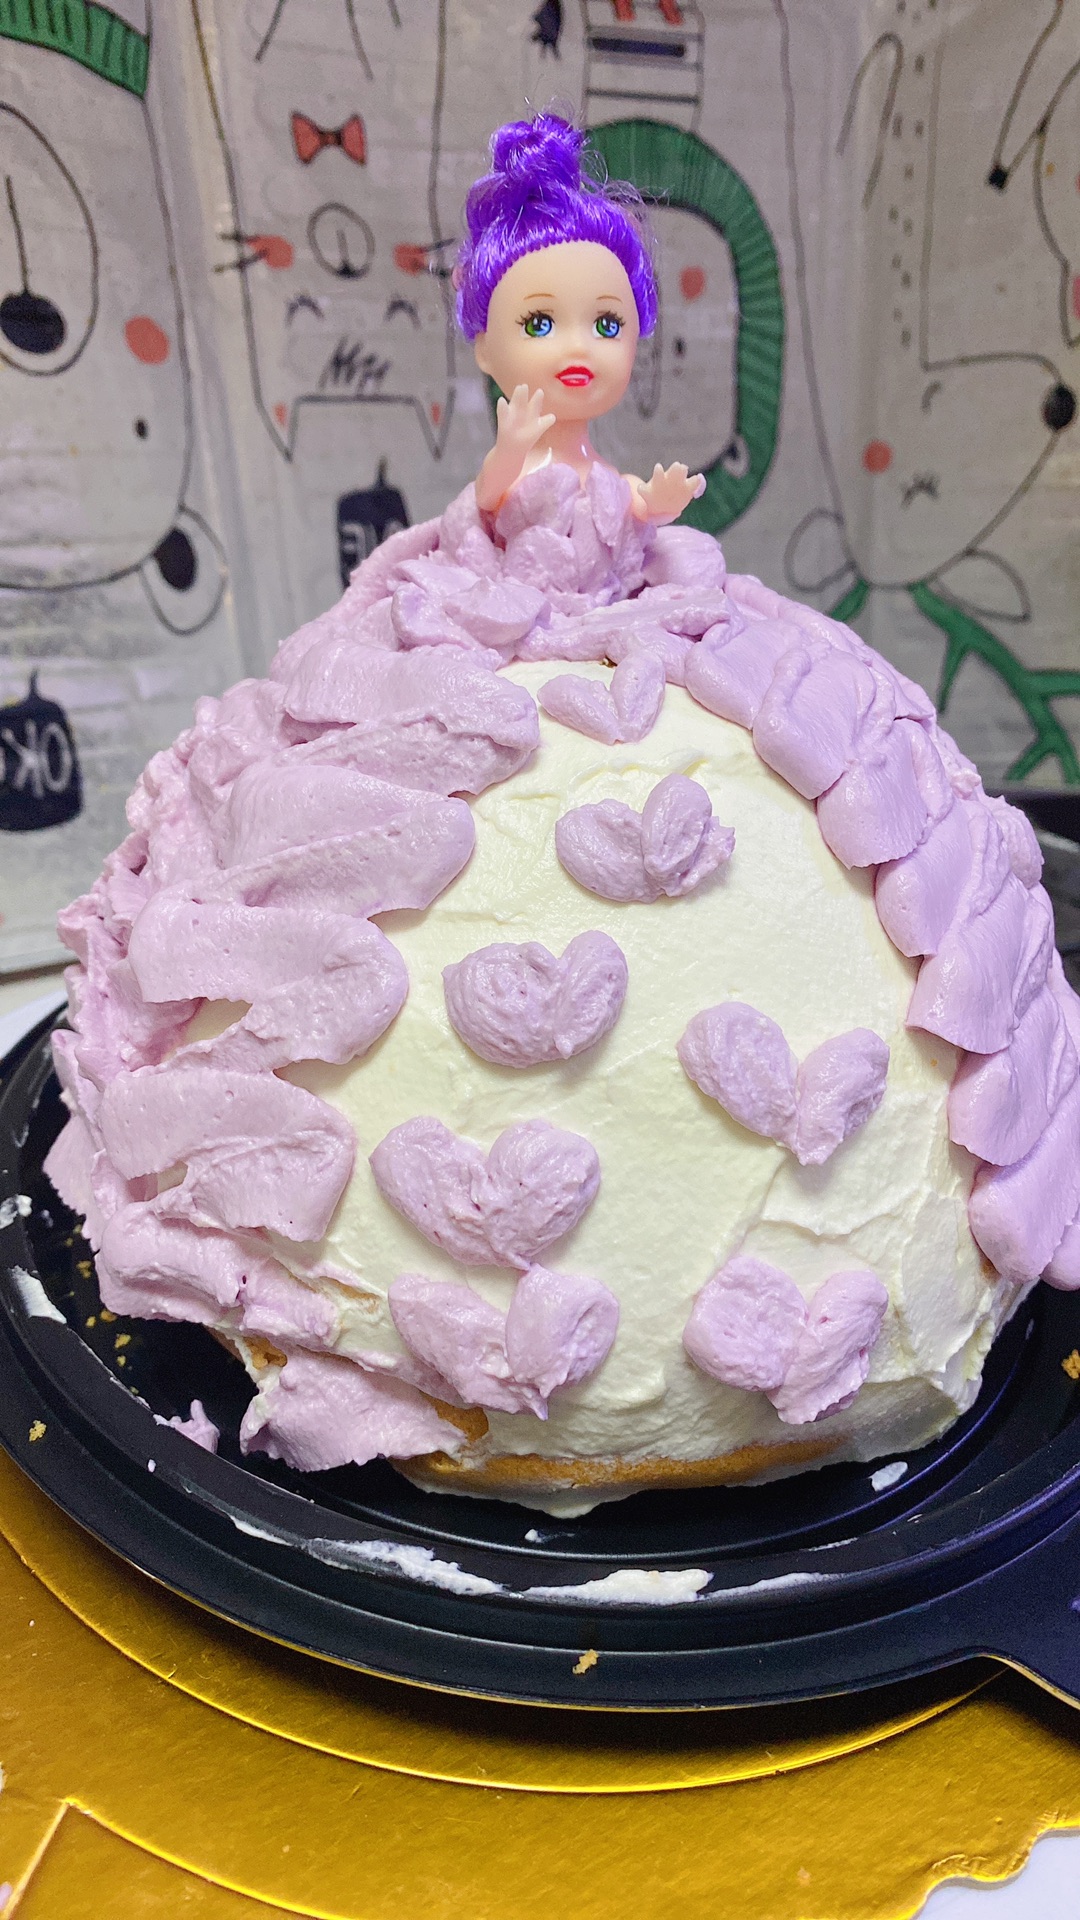 芭比公主蛋糕哪种牌子比较好 芭比公主蛋糕彩虹价格